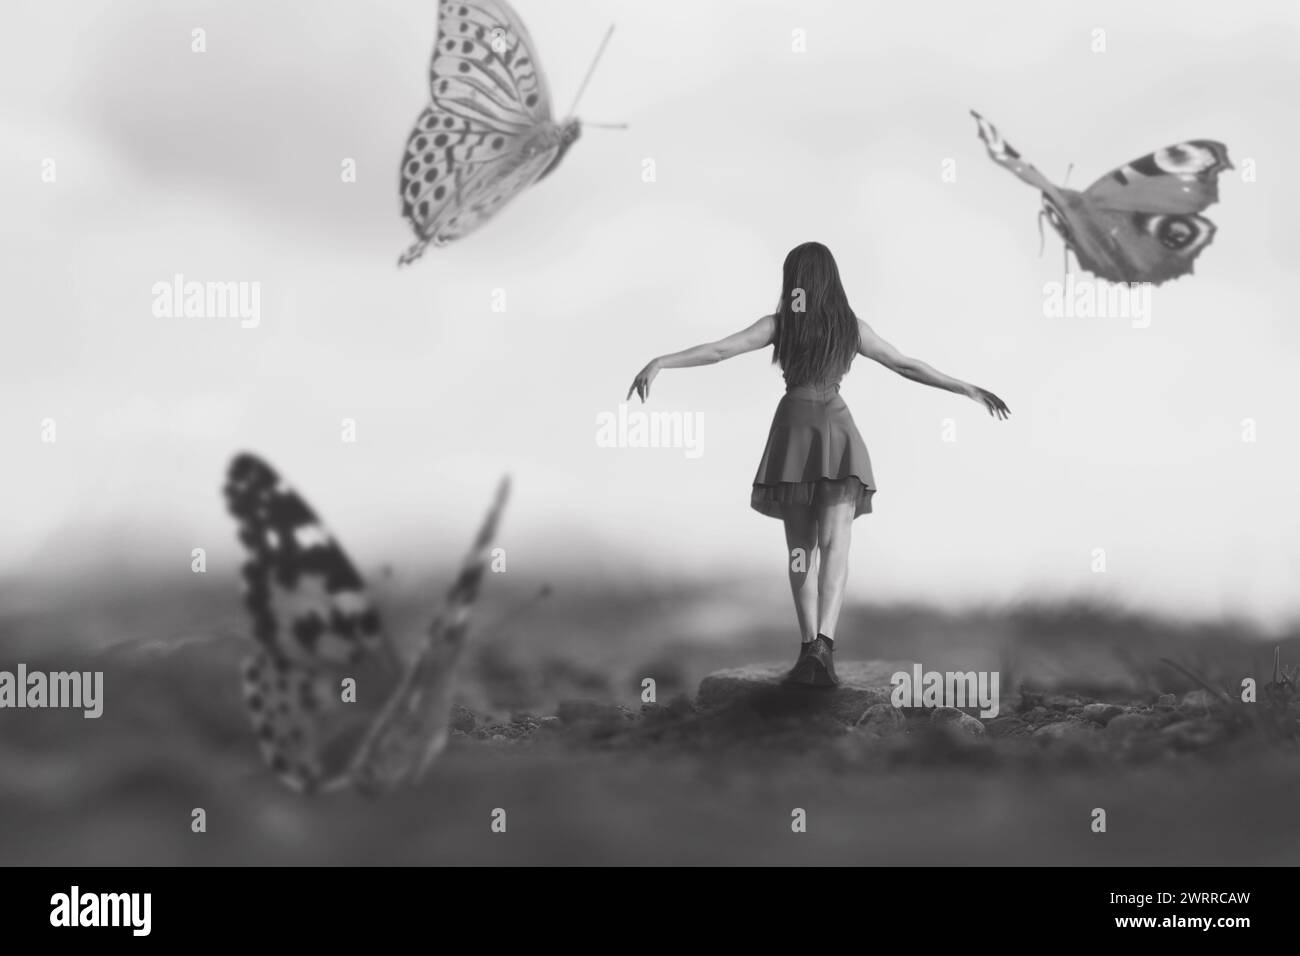 femme marchant joyeusement parmi les papillons géants dansant autour d'elle, concept abstrait Banque D'Images